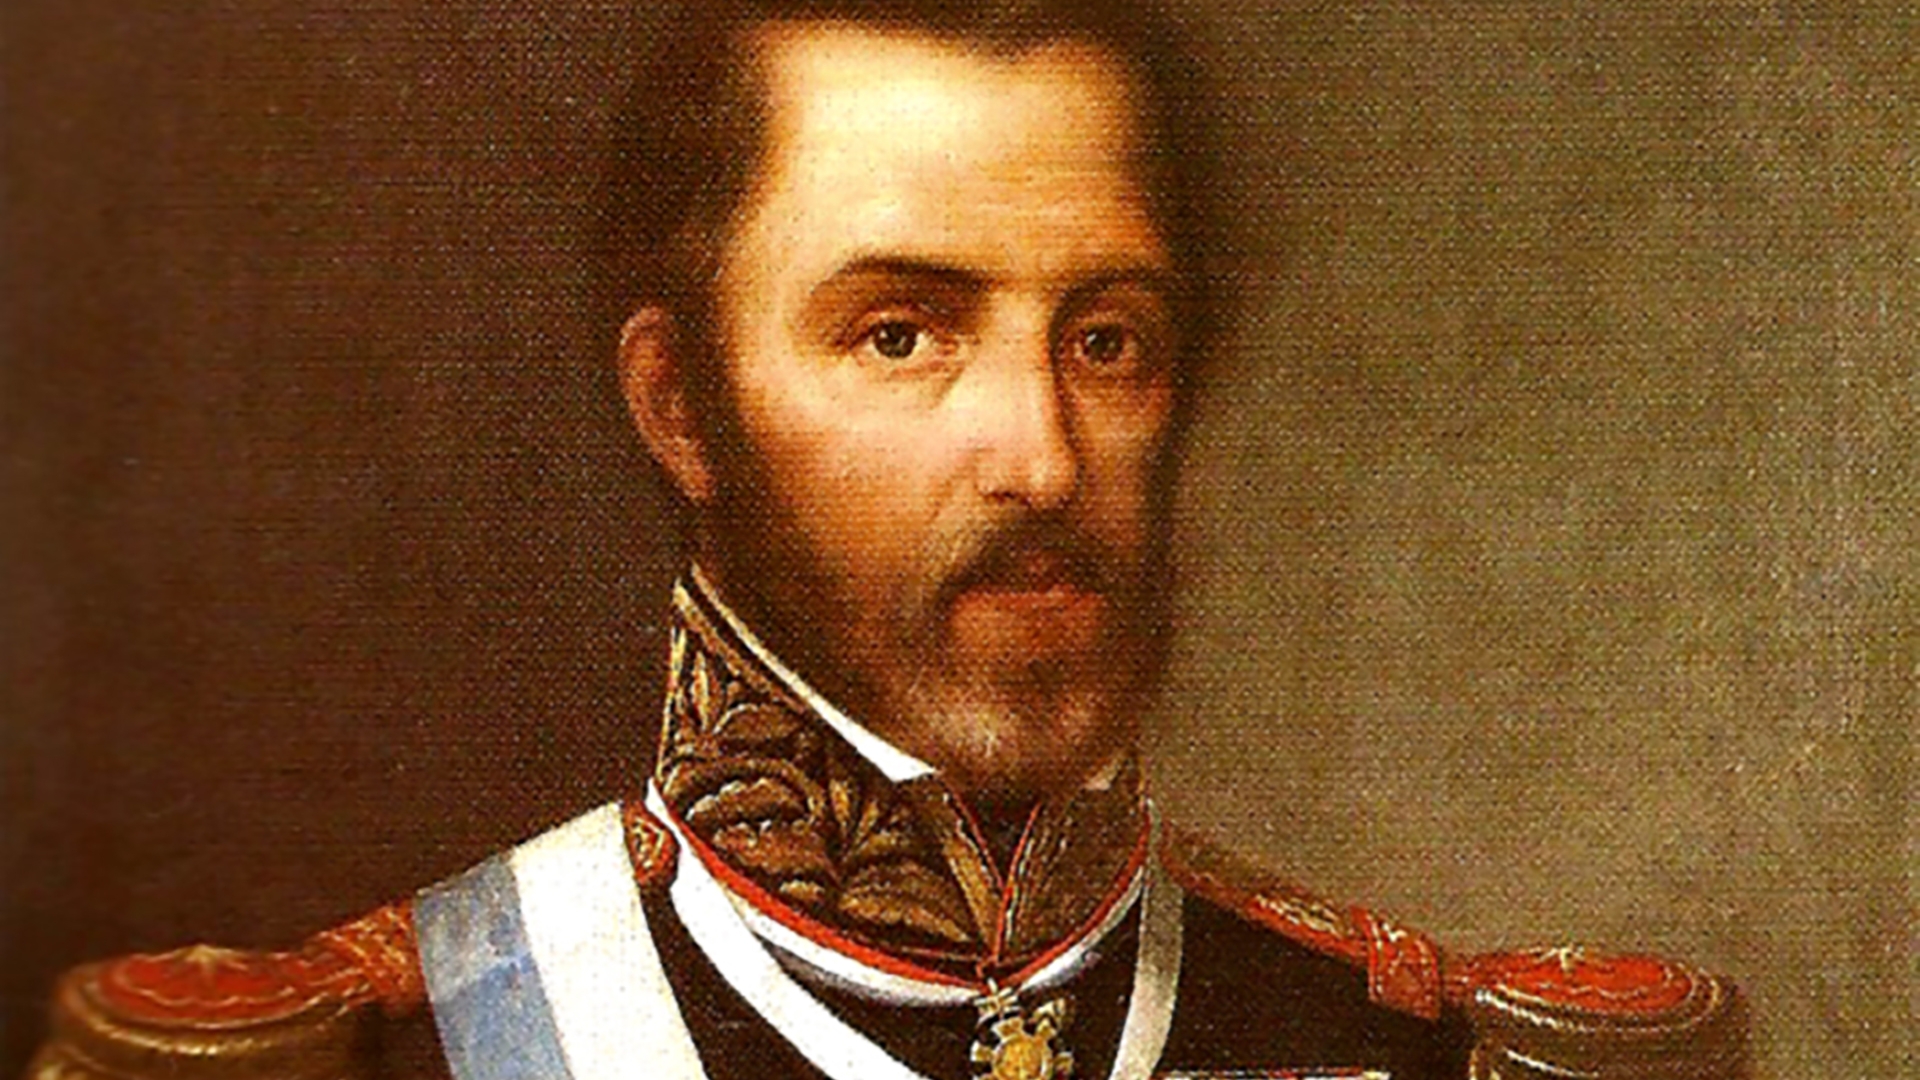 Juan Lavalle, de destacada actuación en la batalla, donde murió su hermano menor. fue el que recogió los efectos personales de Brandsen.